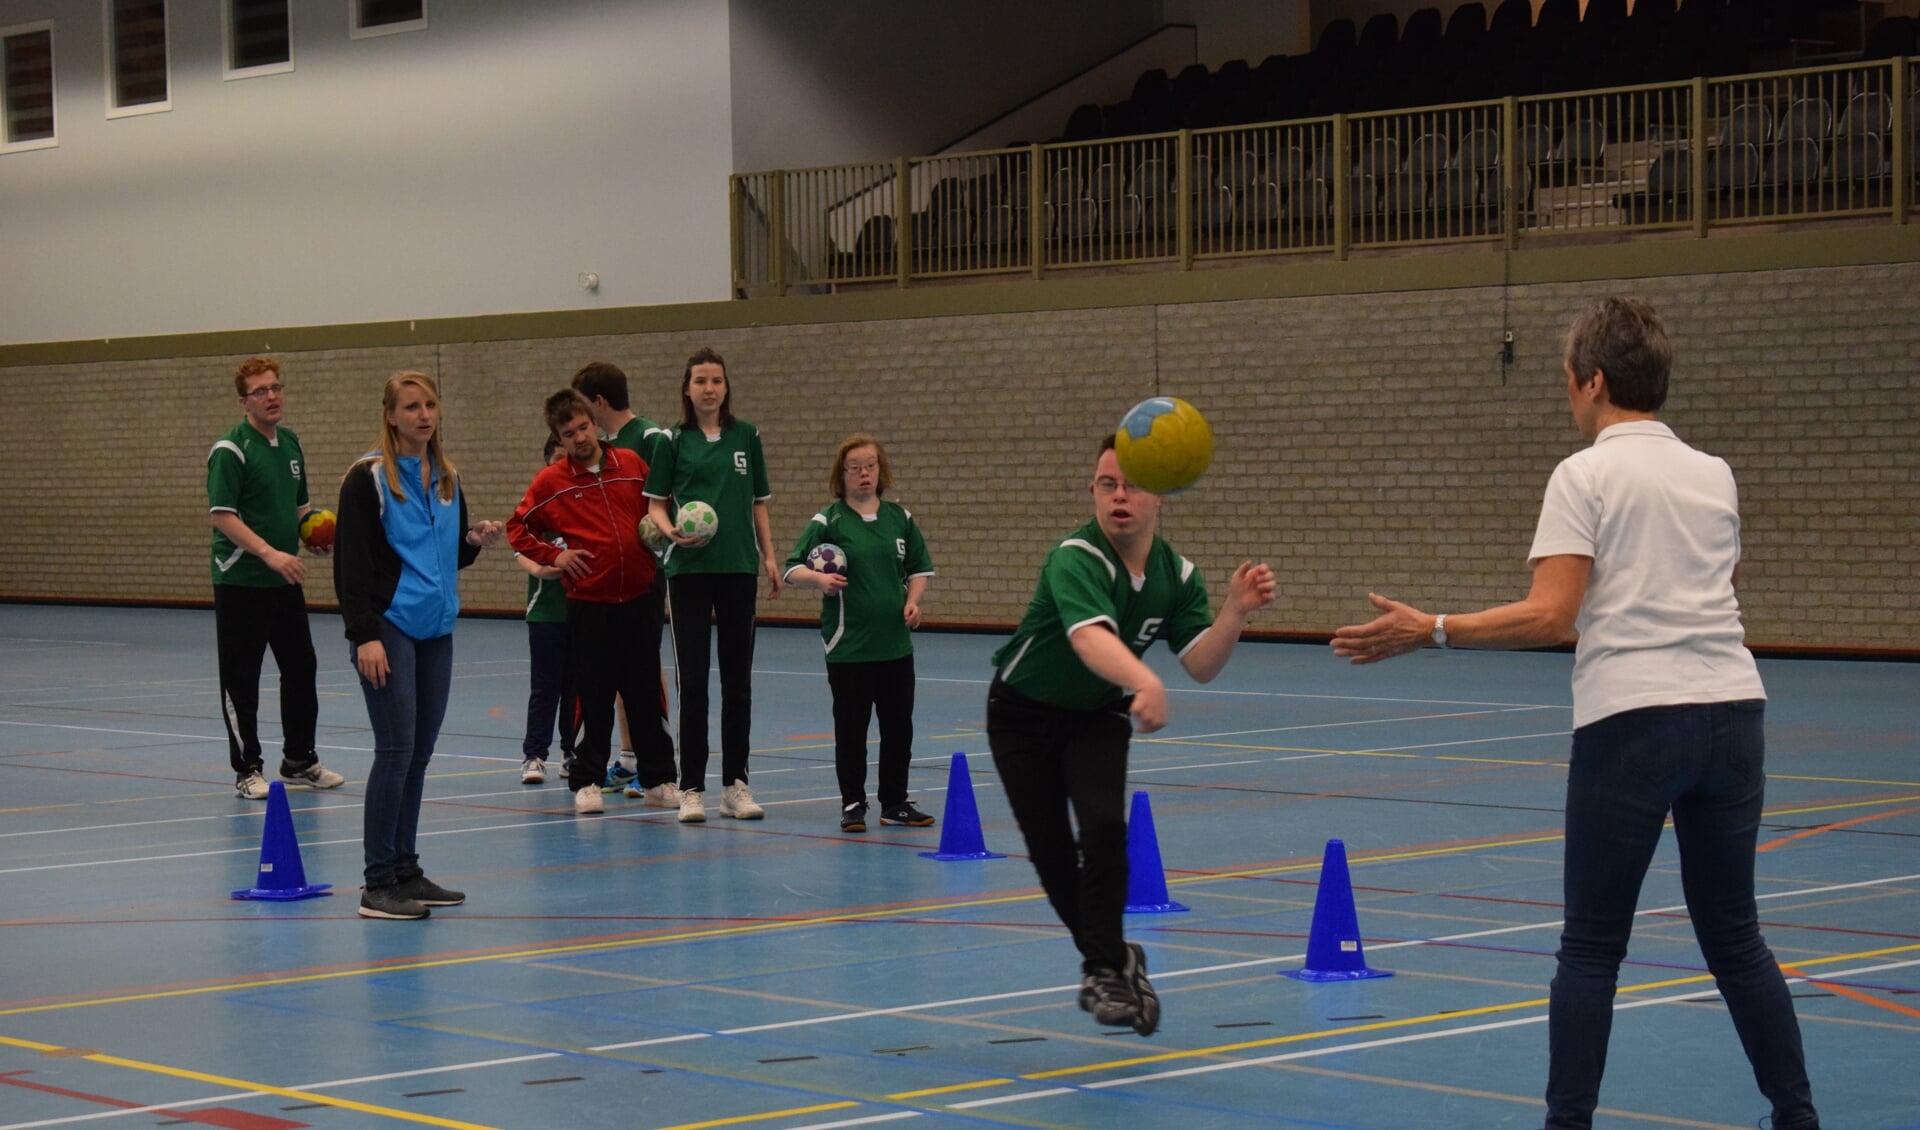 Samantha Pincetti (midden) kijkt toe als haar teamgenoot schiet. Mede door haar ouders (inzet) kan zij handballen in Baarn.